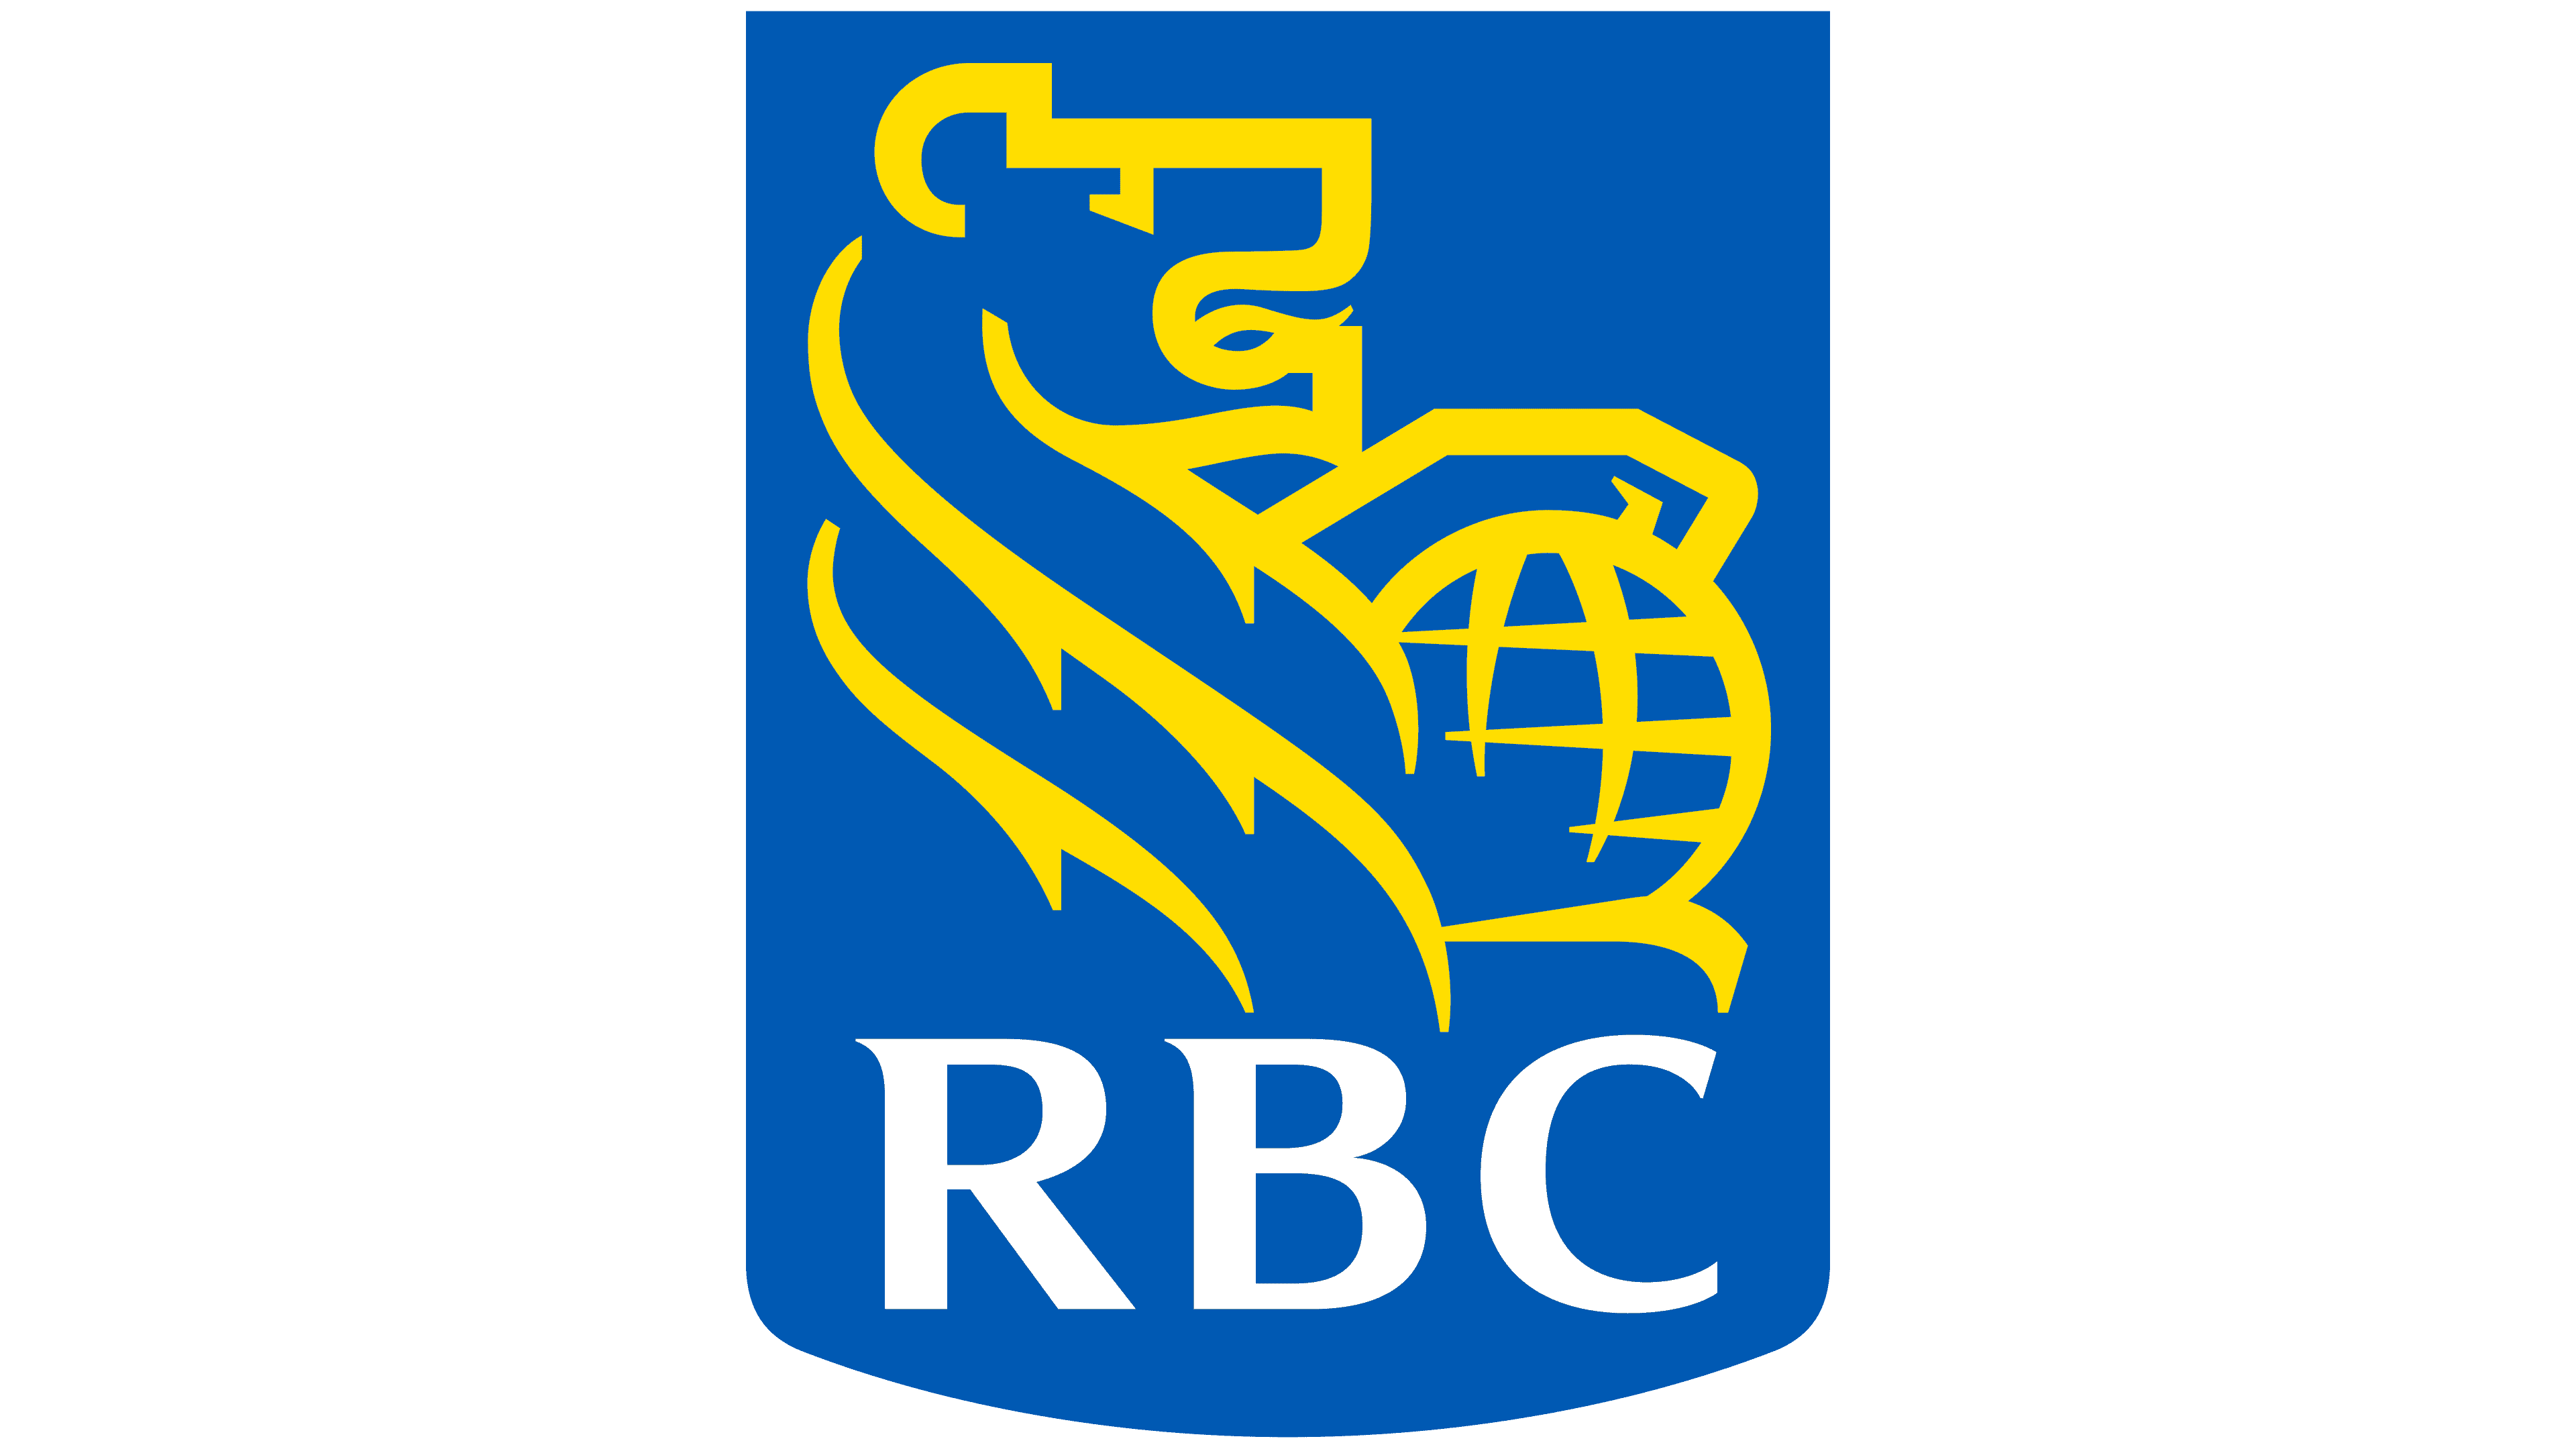 Royal-Bank-of-Canada logo